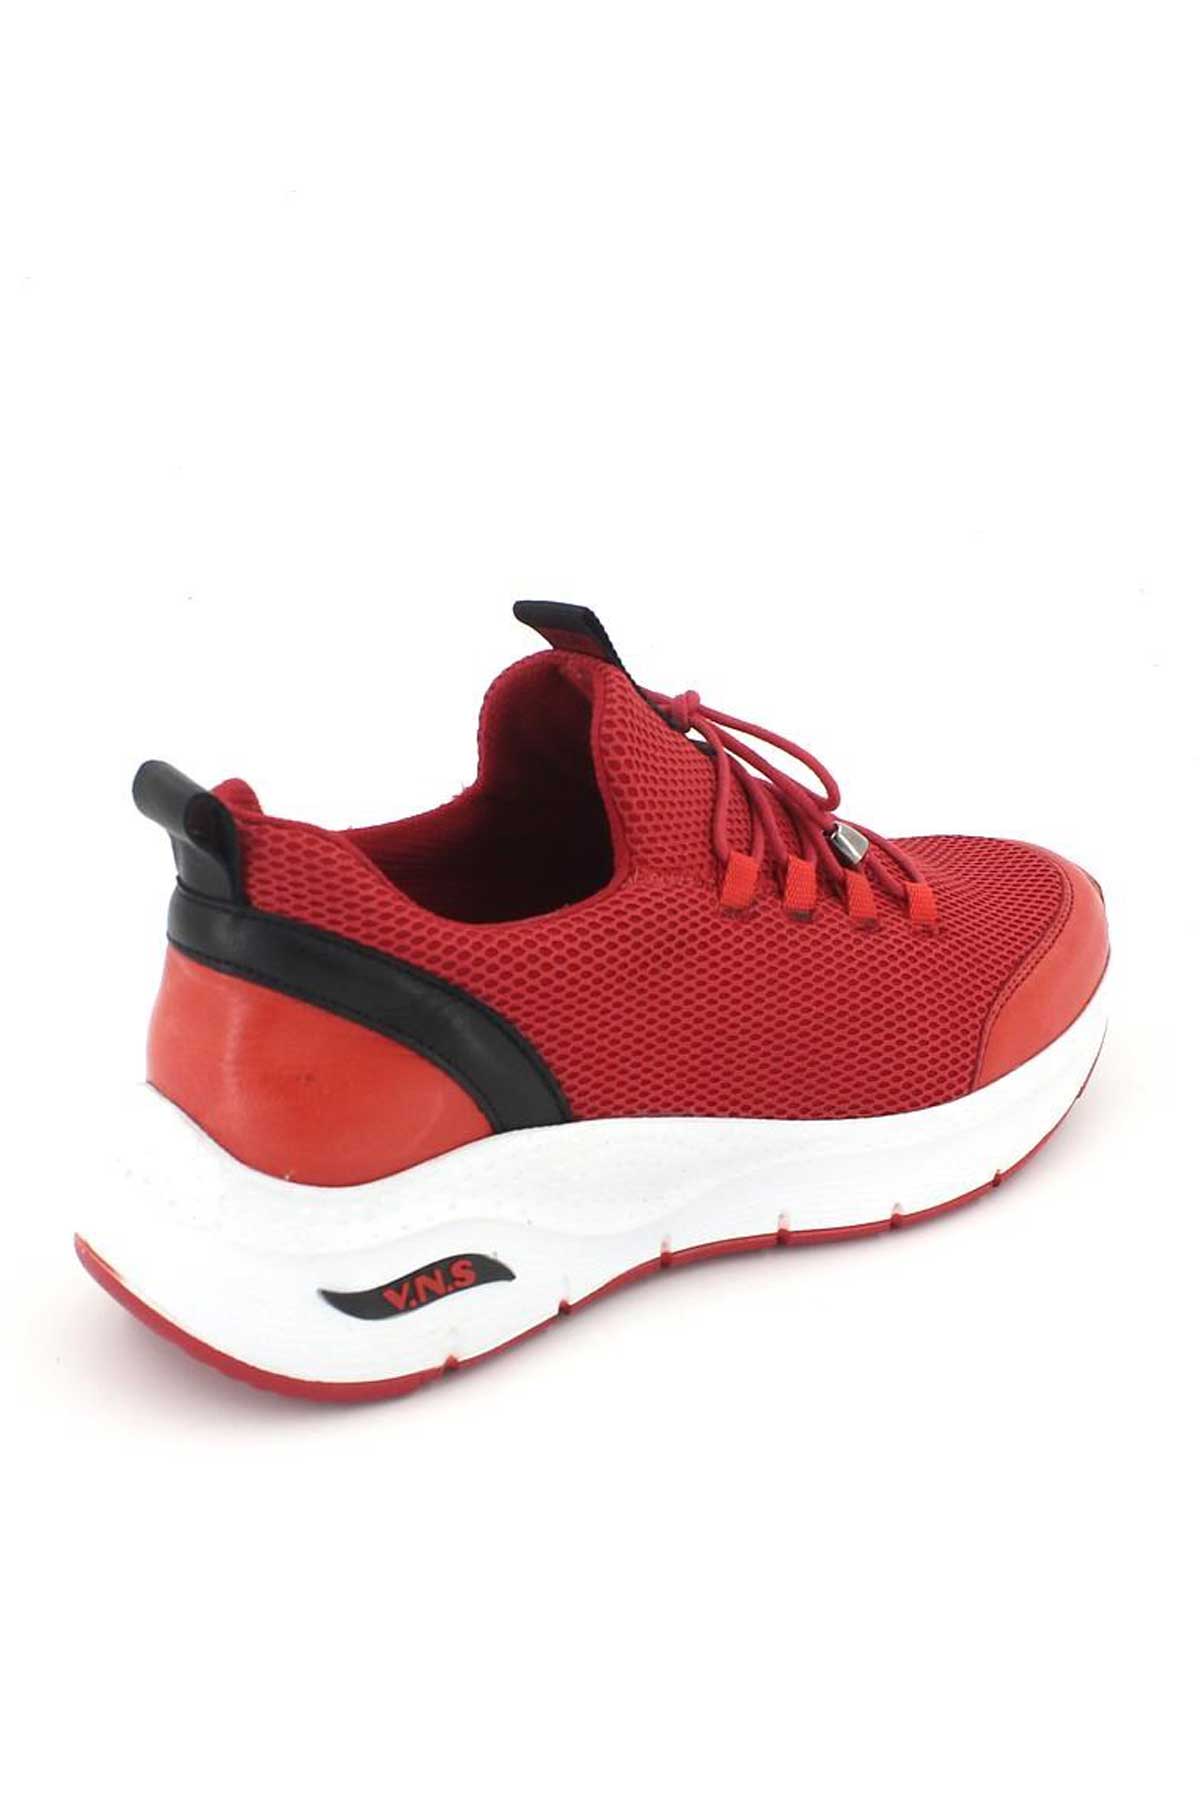 Kadın Sneakers Kırmızı 2115004Y - Thumbnail